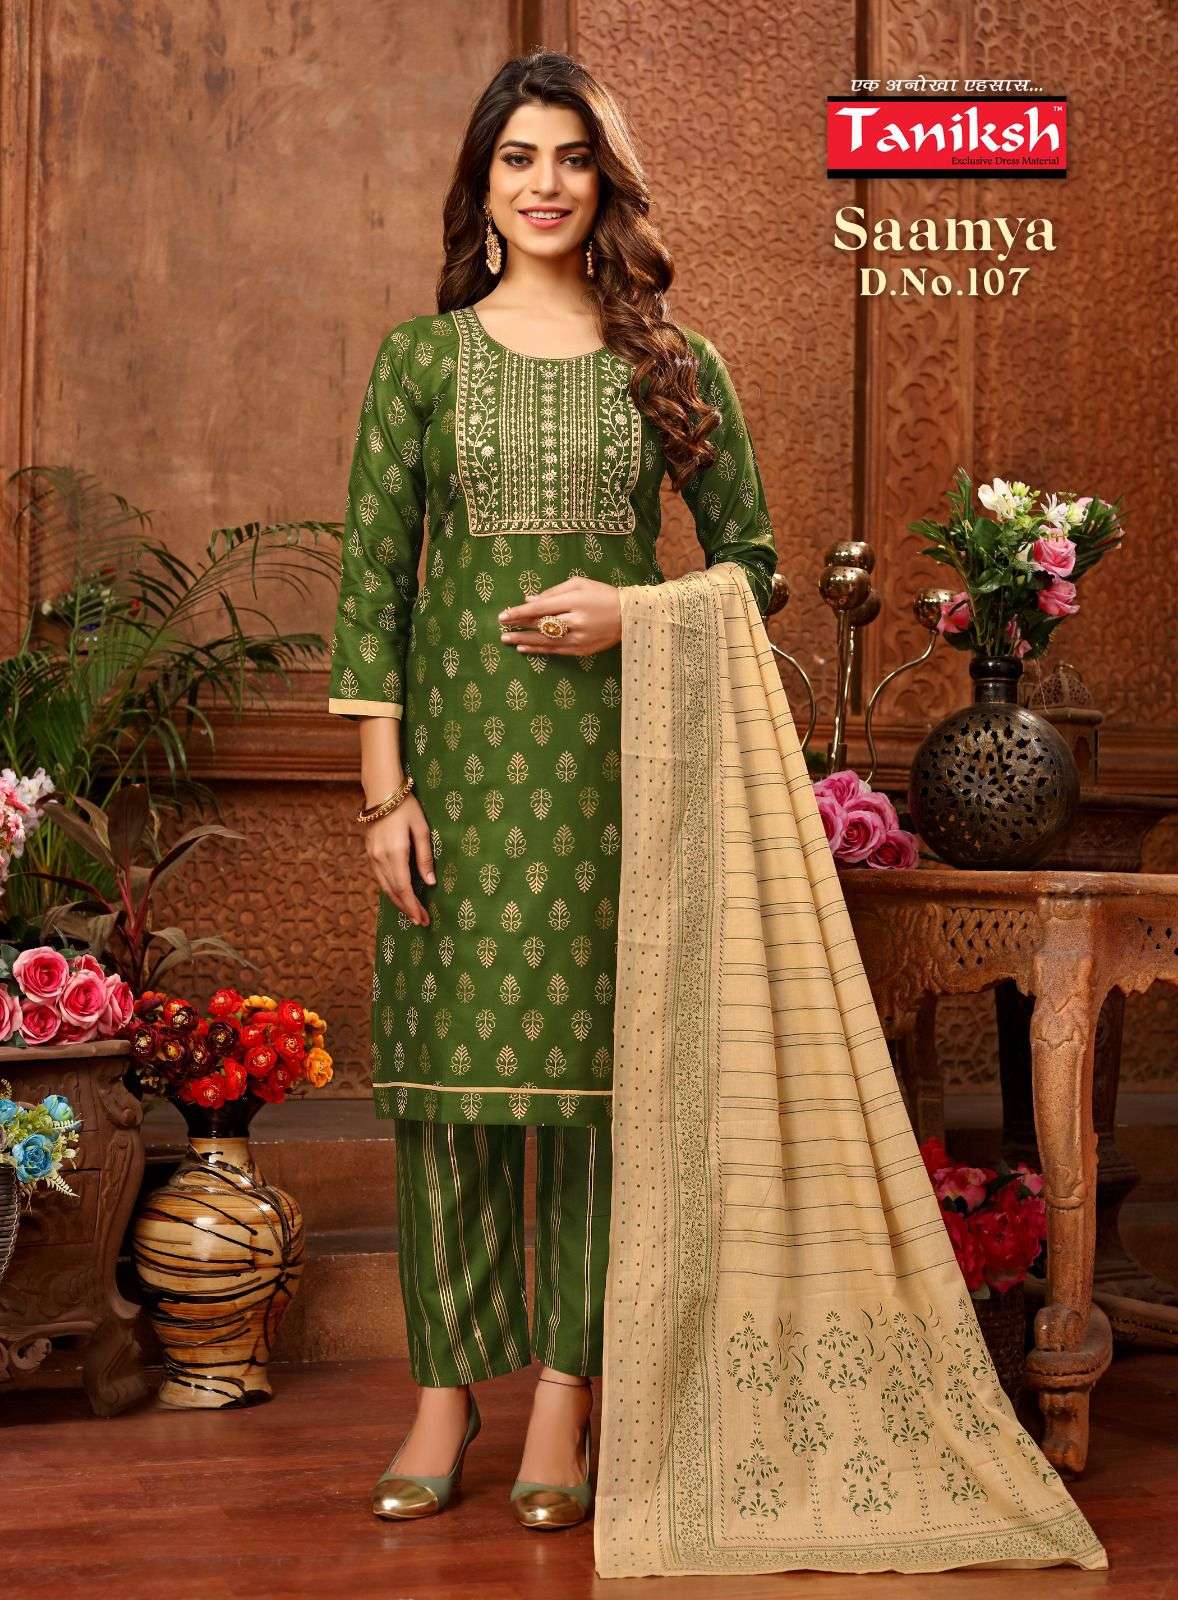 navkar saamya rayon designer readymade salwar suits catalogue latest collection 2023